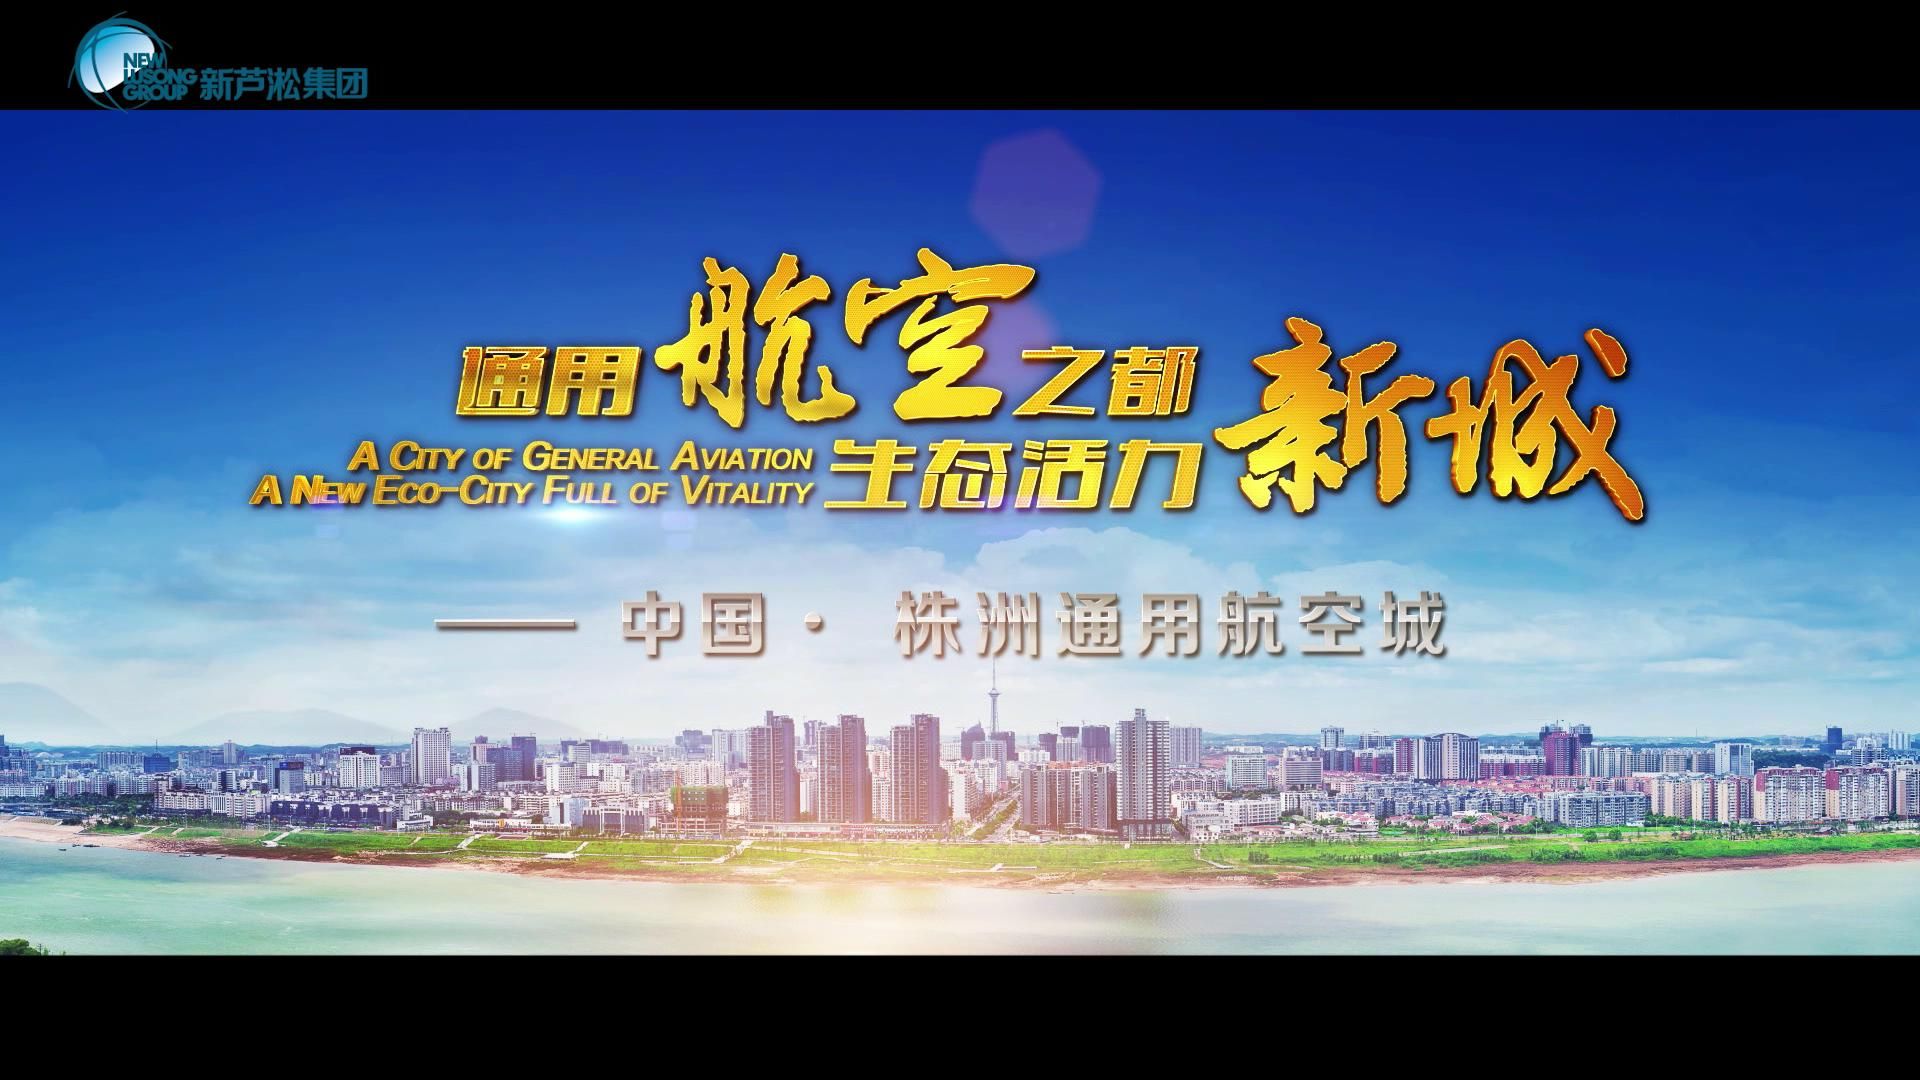 通用航空之都，生态魅力新城——中国·株洲通用航空城